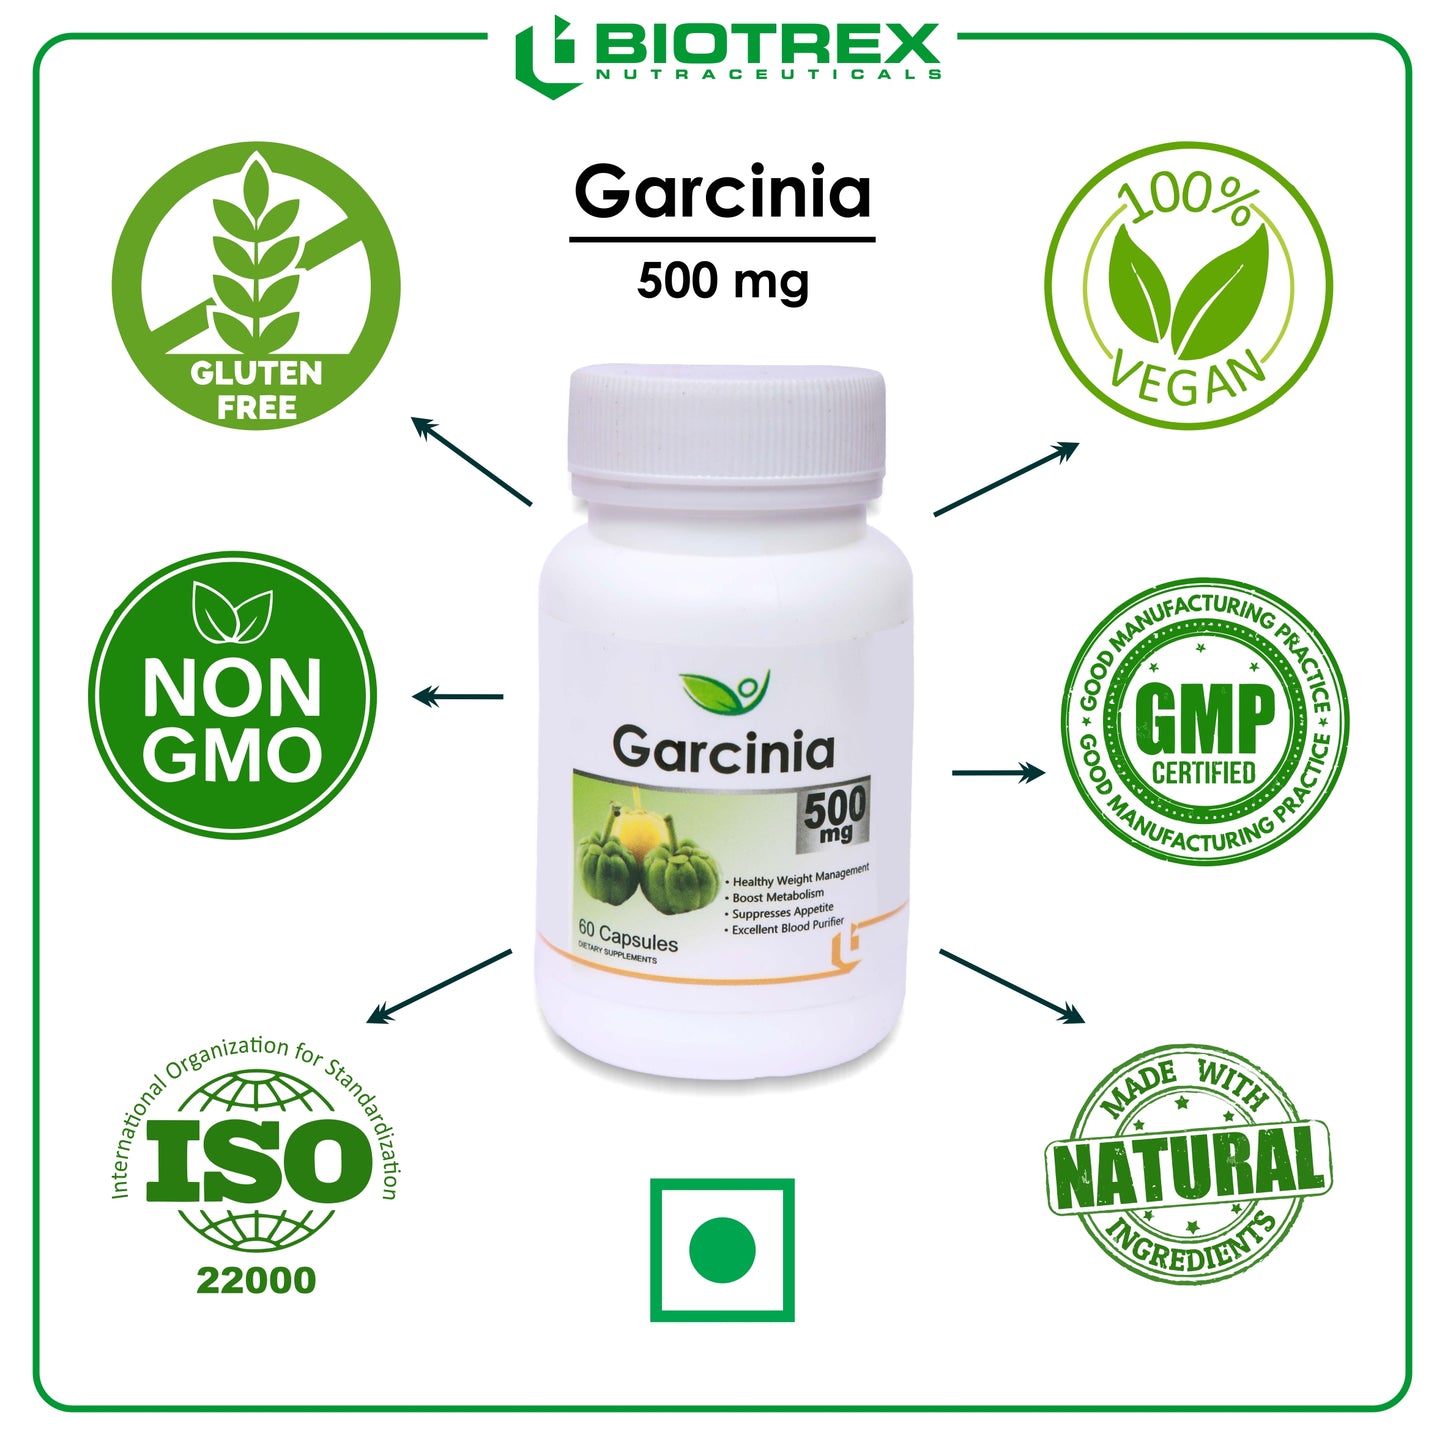 Biotrex Garcinia 500mg - 60 Capsules